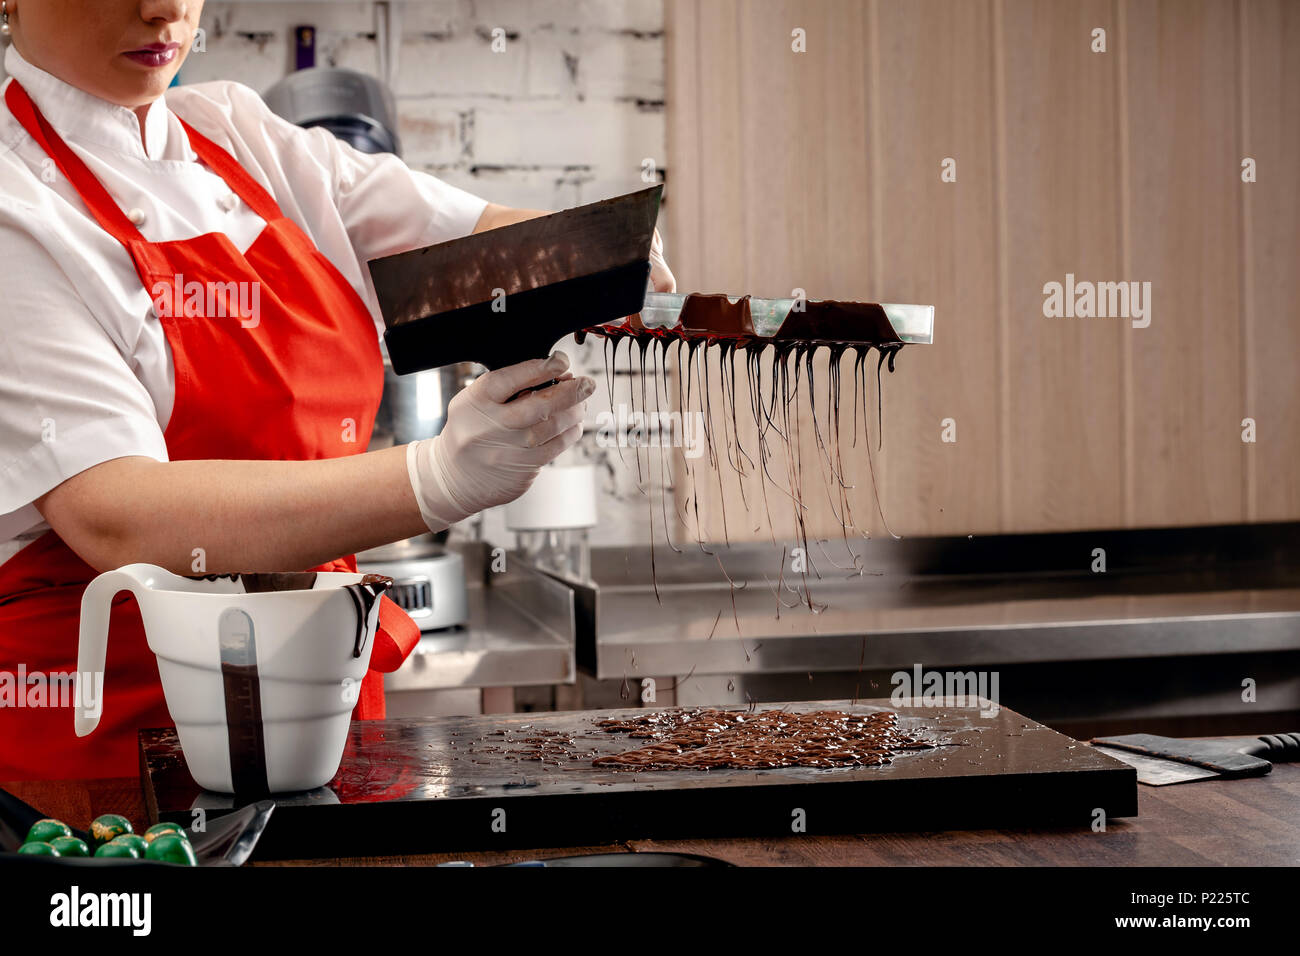 Une femme pâtissier avec uniforme rouge et blanc des gants stériles n un ensemble de chocolats colorés de chocolat au lait sur une table. Banque D'Images